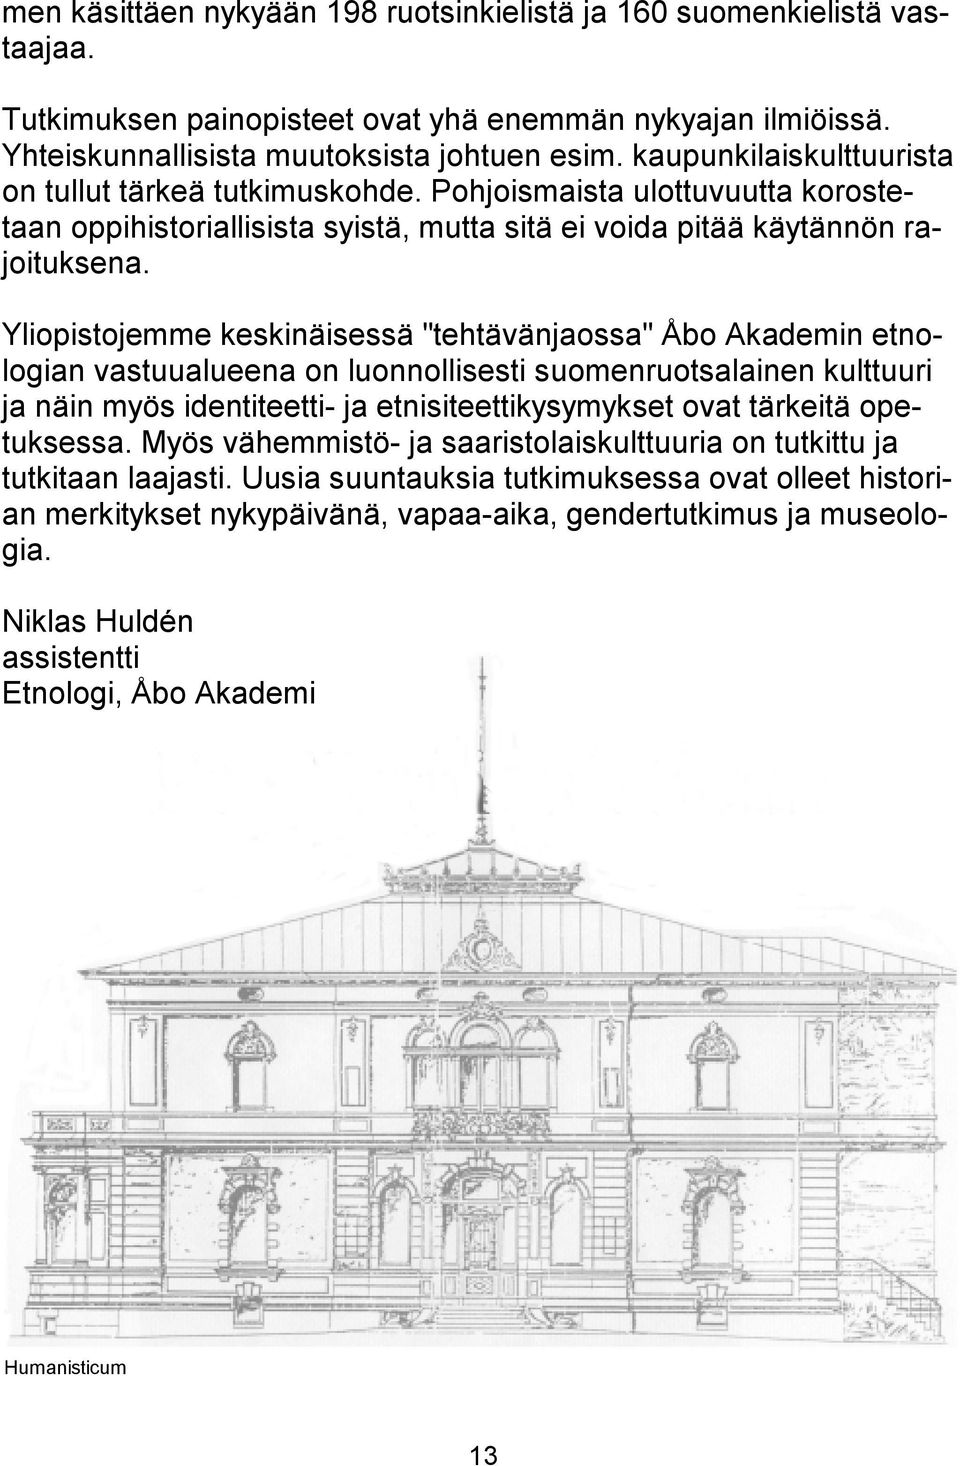 Yliopistojemme keskinäisessä "tehtävänjaossa" Åbo Akademin etnologian vastuualueena on luonnollisesti suomenruotsalainen kulttuuri ja näin myös identiteetti- ja etnisiteettikysymykset ovat tärkeitä